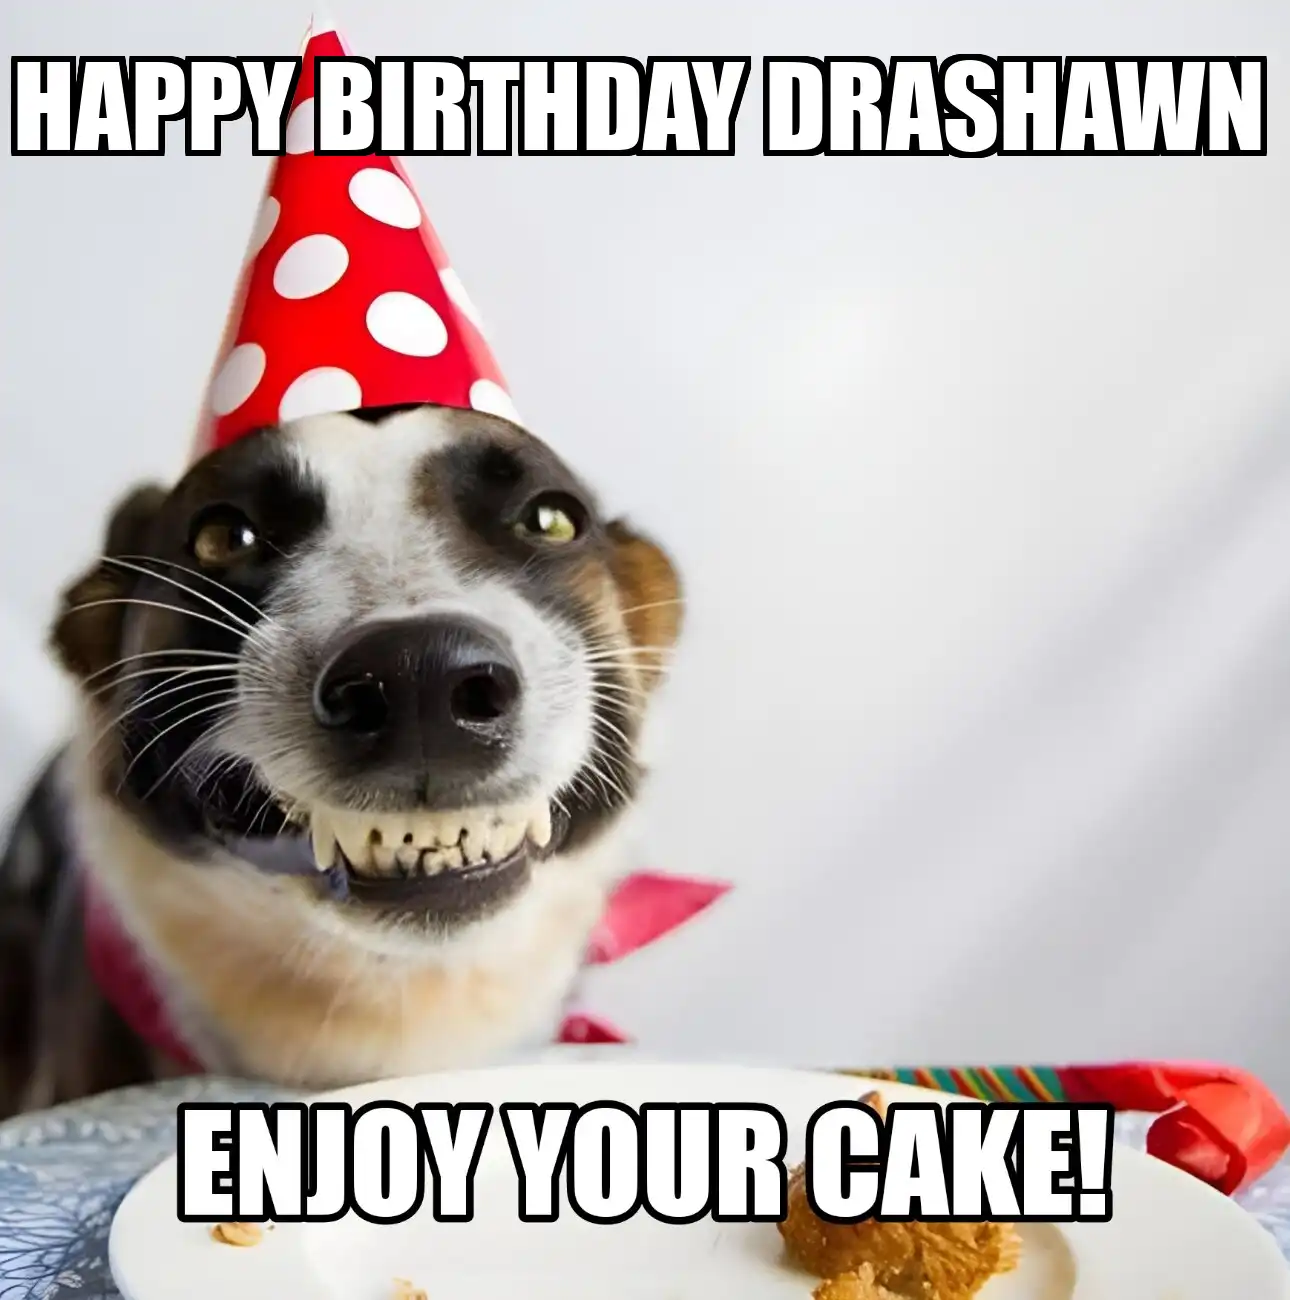 Happy Birthday Drashawn Enjoy Your Cake Dog Meme